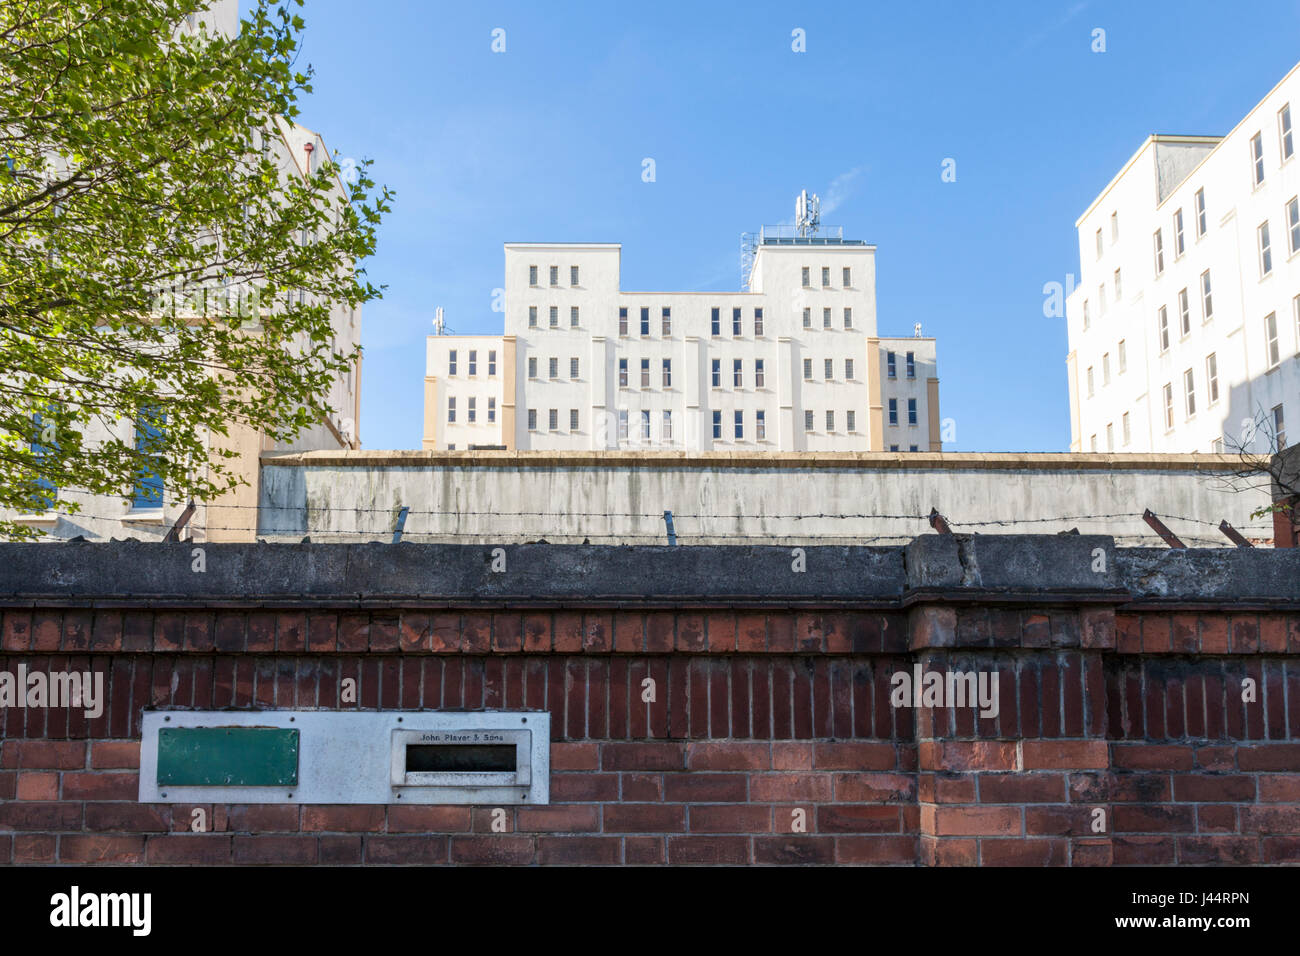 Certains des vieux 1930 John Player entrepôt derrière un mur de briques avec boîte aux lettres indiquant le nom d'entreprise, Nottingham, England, UK Banque D'Images